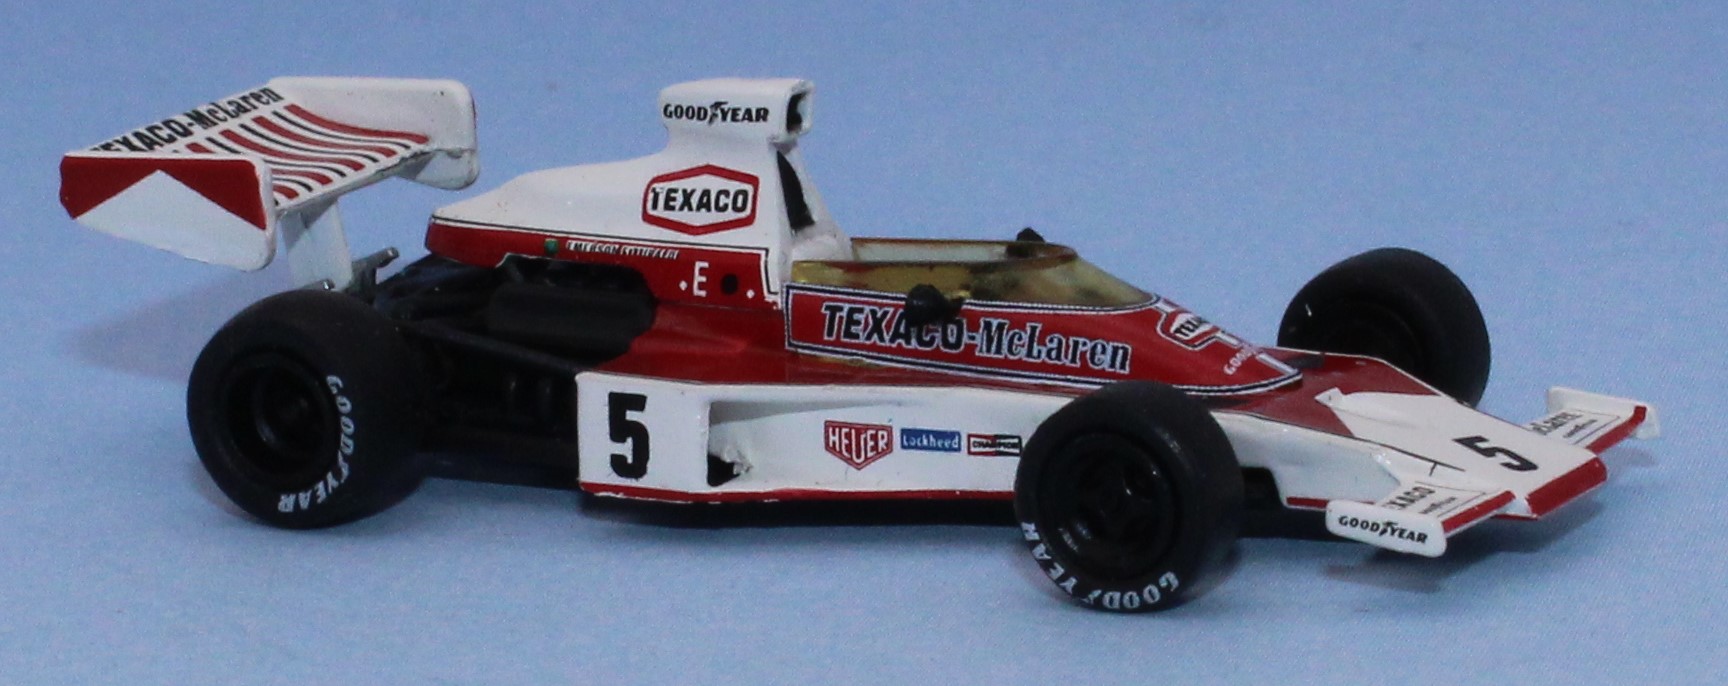 Brekina 22952 - McLaren M23 Formule 1, numéro 5, Emerson Fittipaldi, 1974